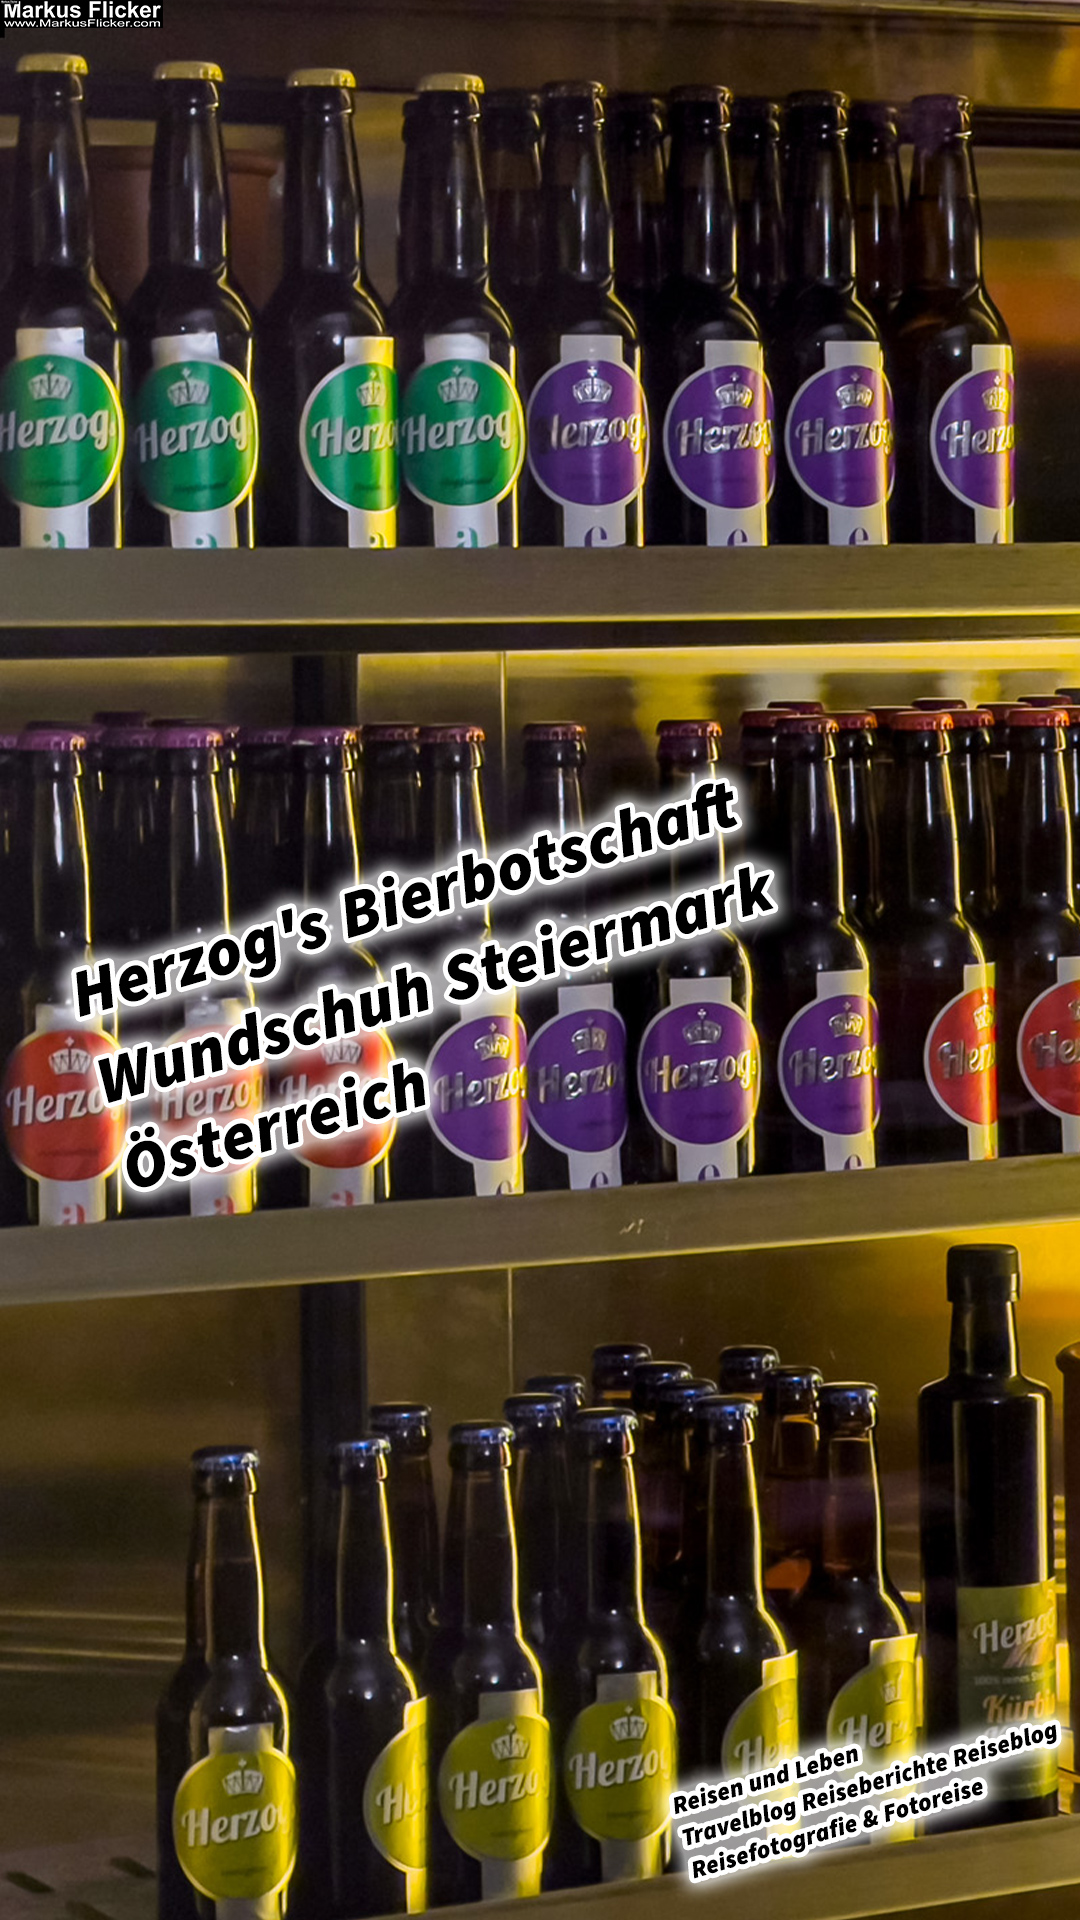 Herzog’s Bierbotschaft Wundschuh Graz Umgebung Steiermark Österreich